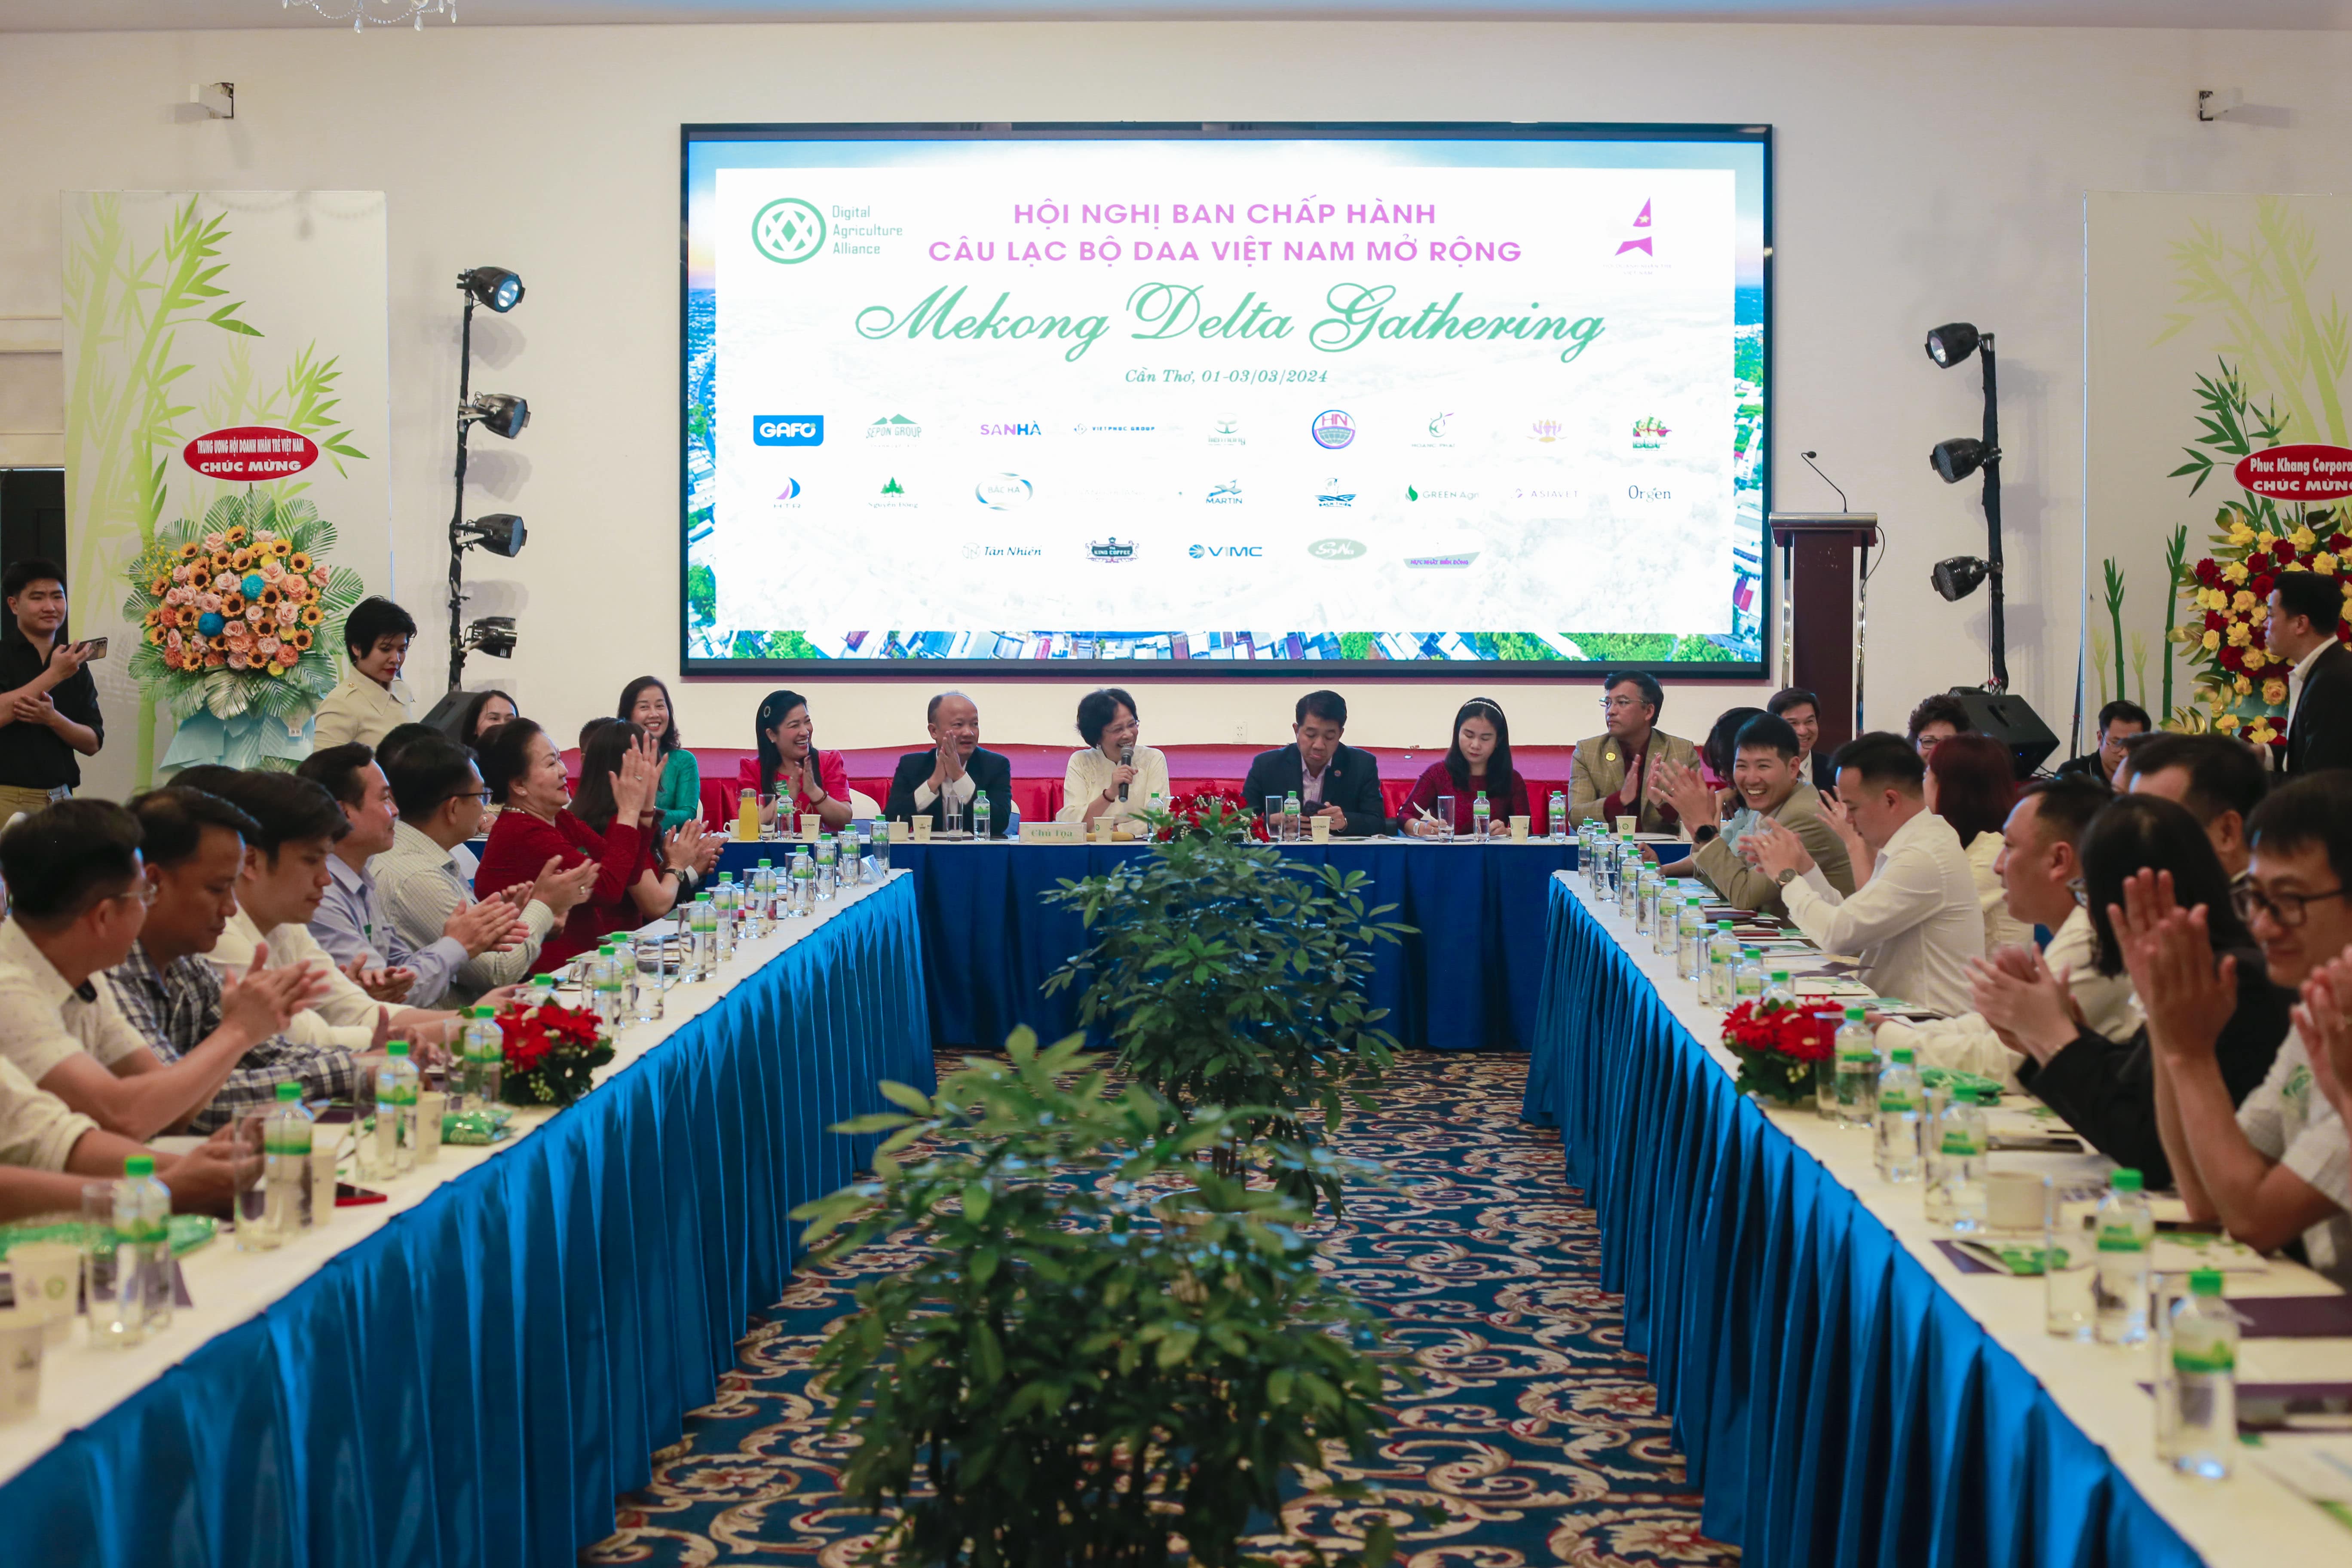 Hội nghị Ban Chấp Hành CLB DAA Việt Nam mở rộng “ Mekong Delta Gathering